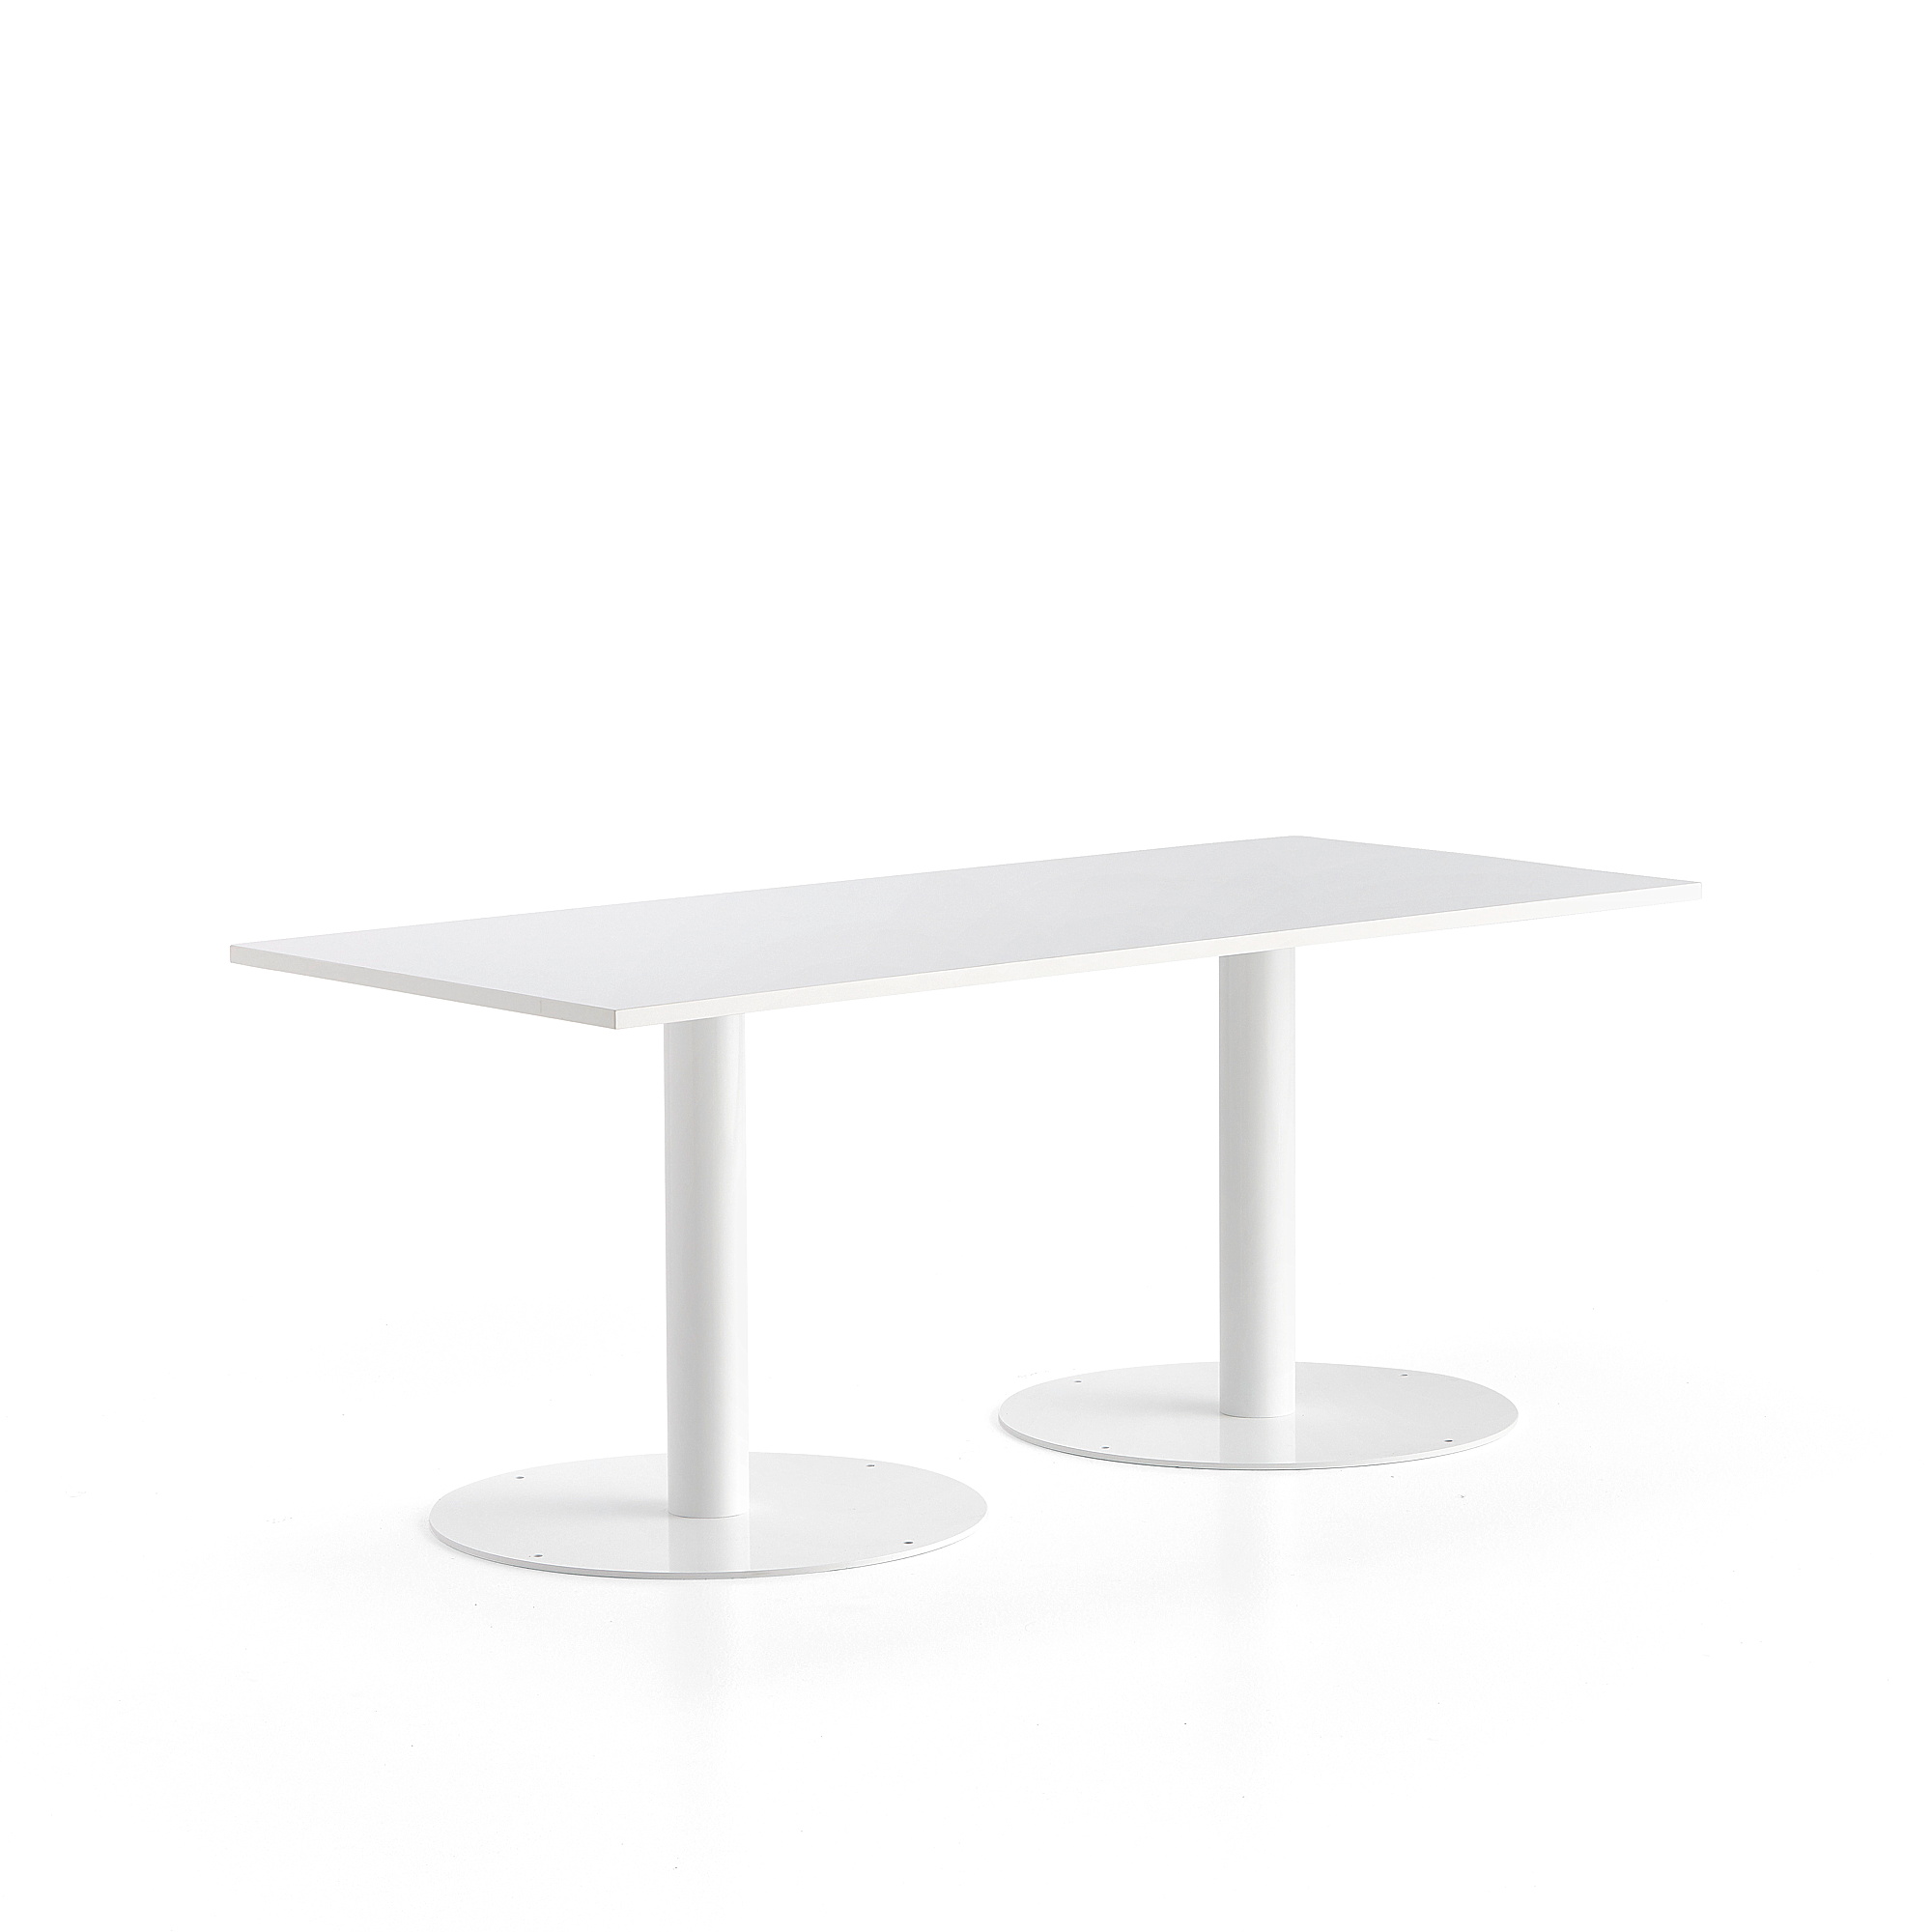 Stůl ALVA, 1800x800x720 mm, bílá, bílá